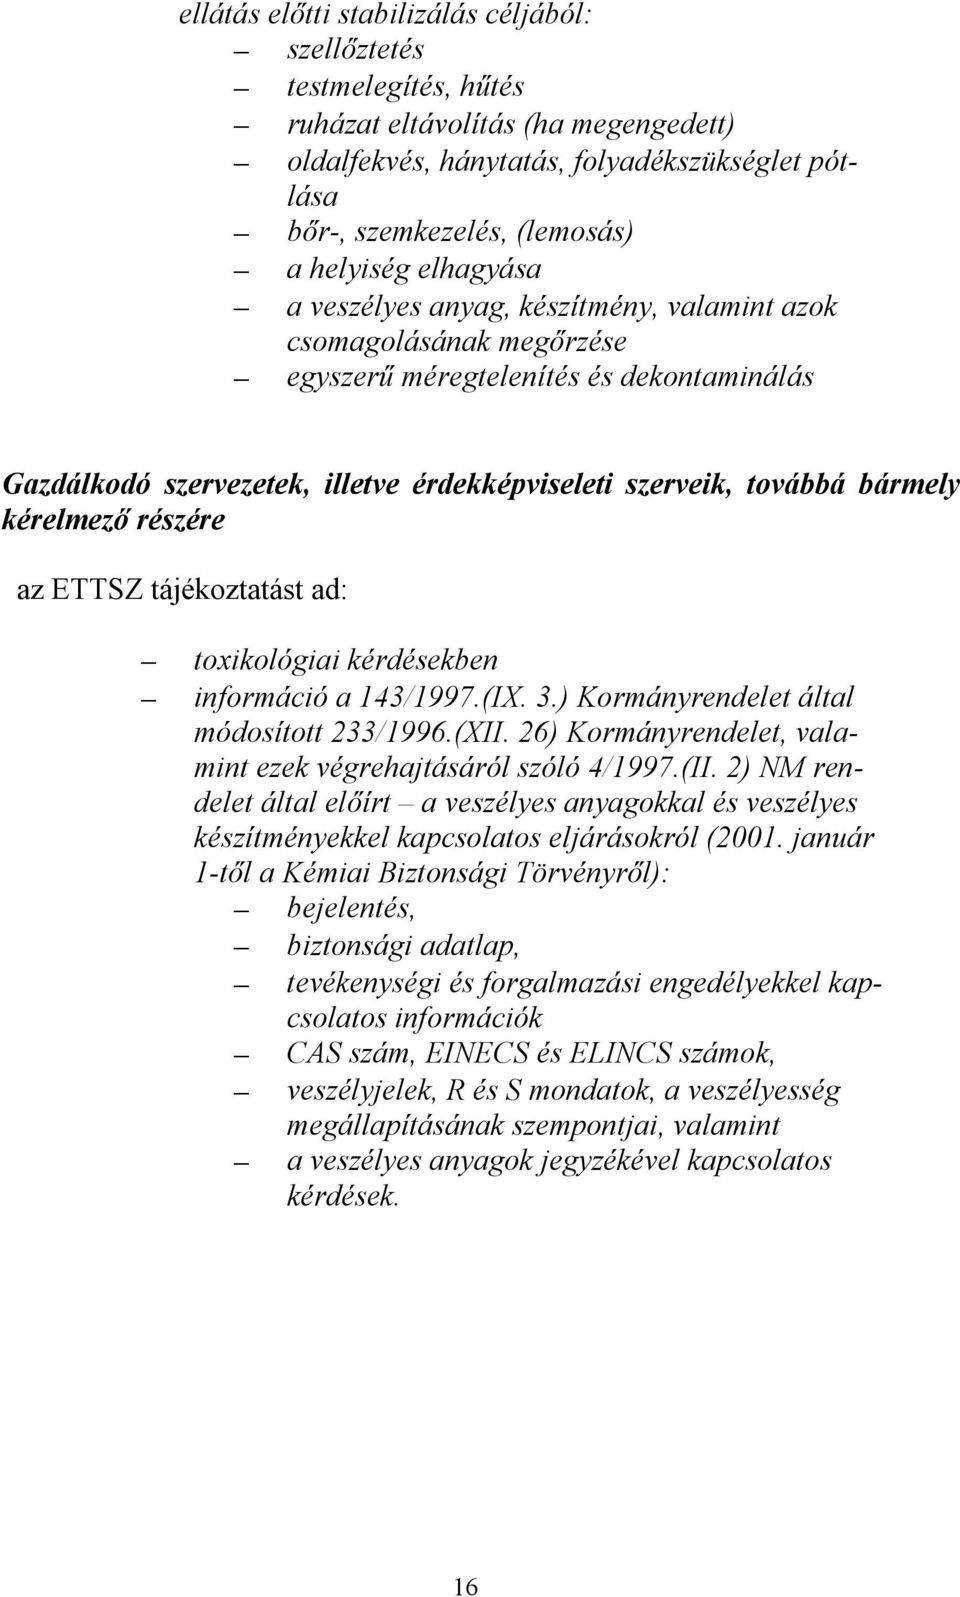 kérelmező részére az ETTSZ tájékoztatást ad: toxikológiai kérdésekben információ a 143/1997.(IX. 3.) Kormányrendelet által módosított 233/1996.(XII.